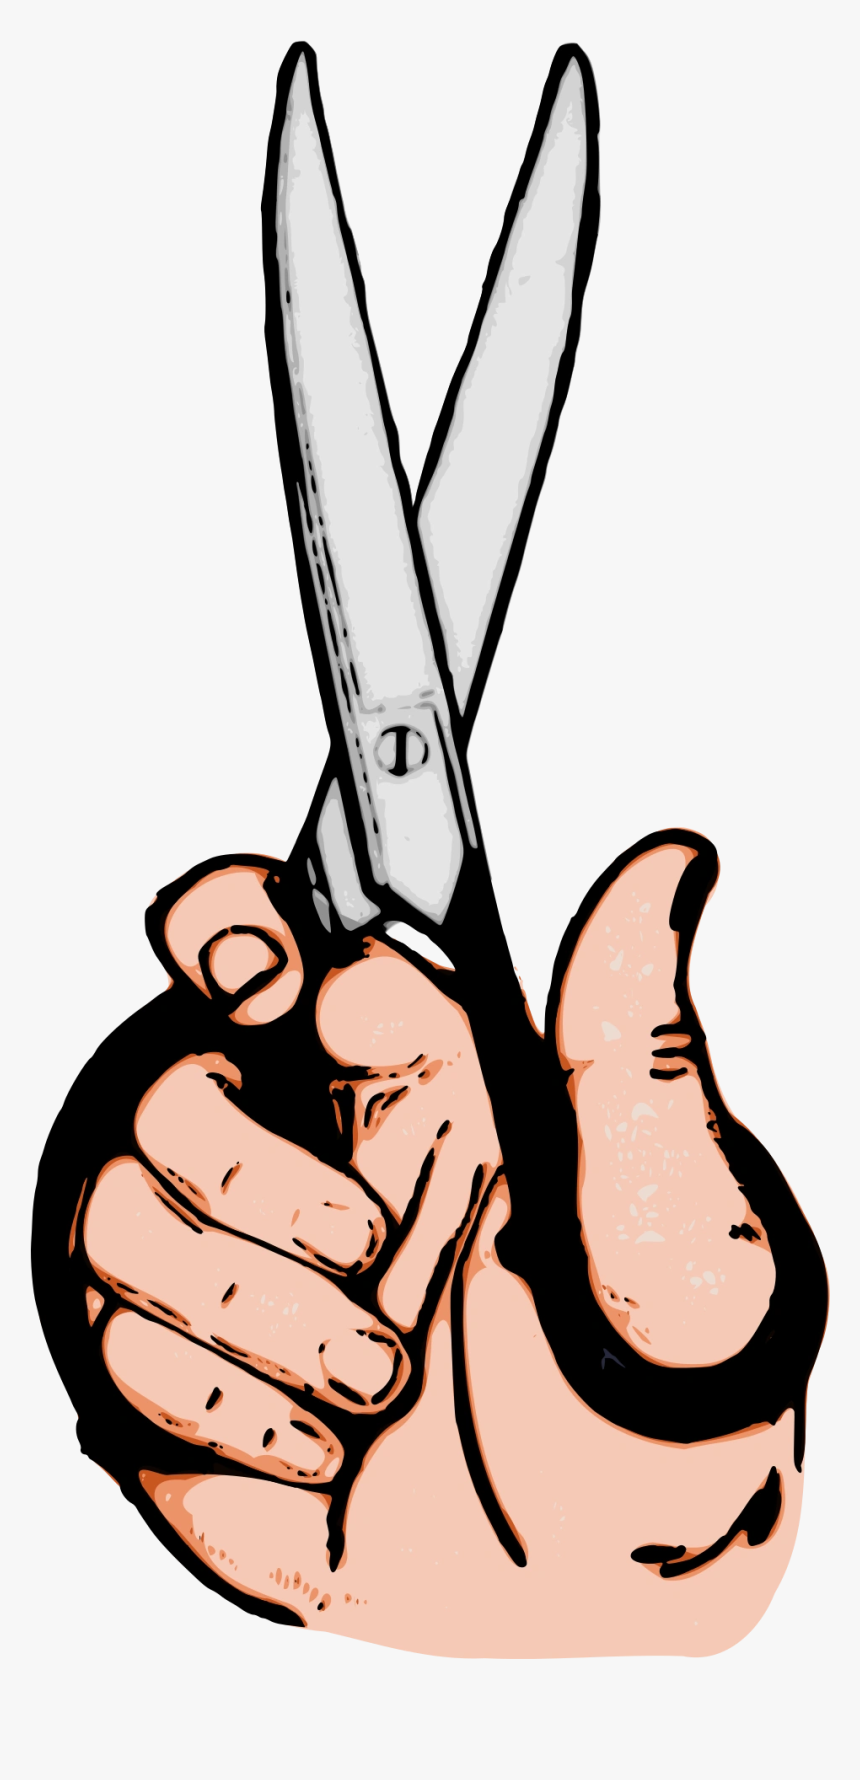 Scissors In Hand Cartoon